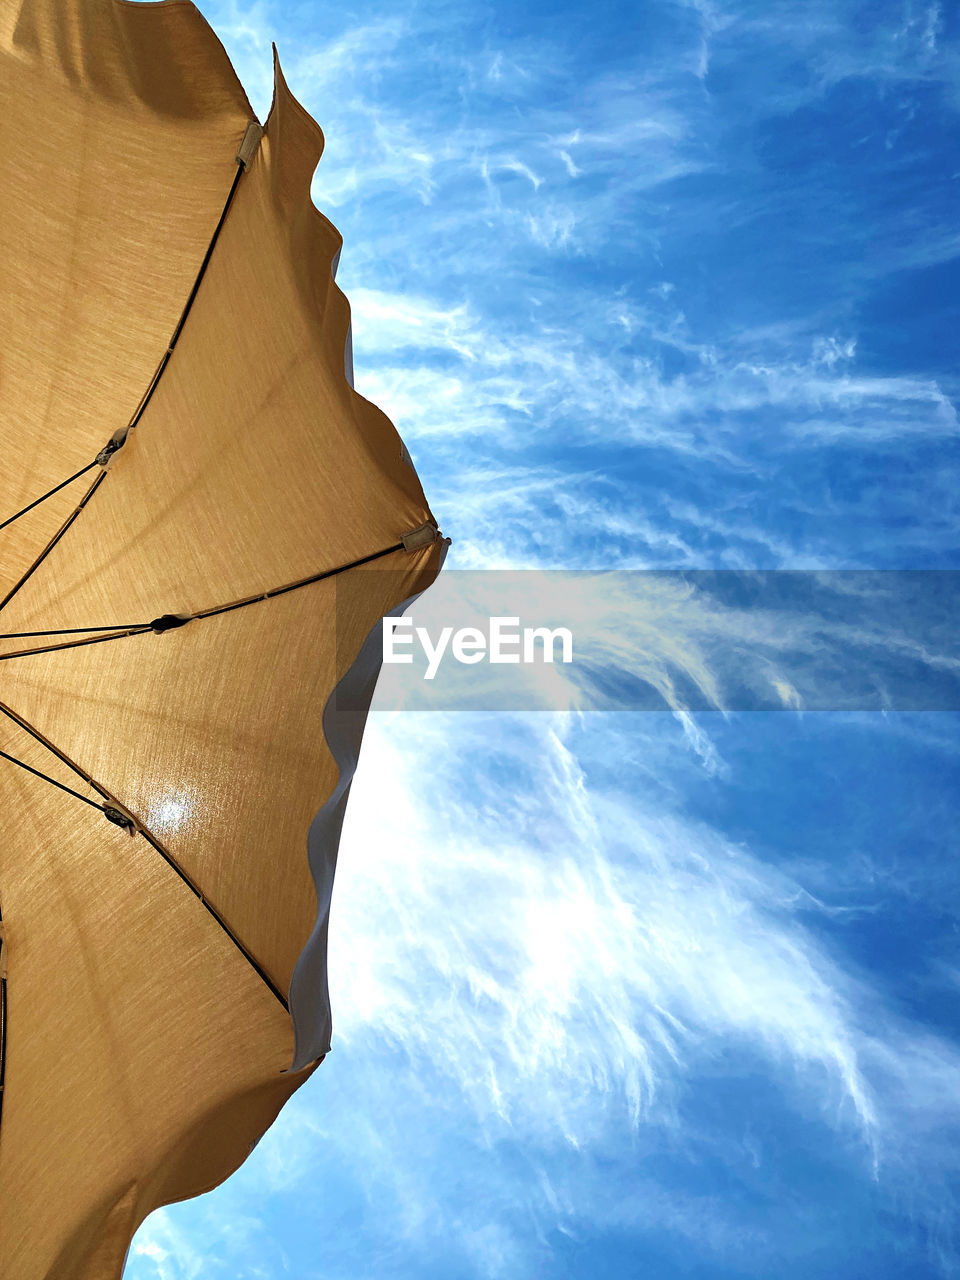 Umbrella against sky